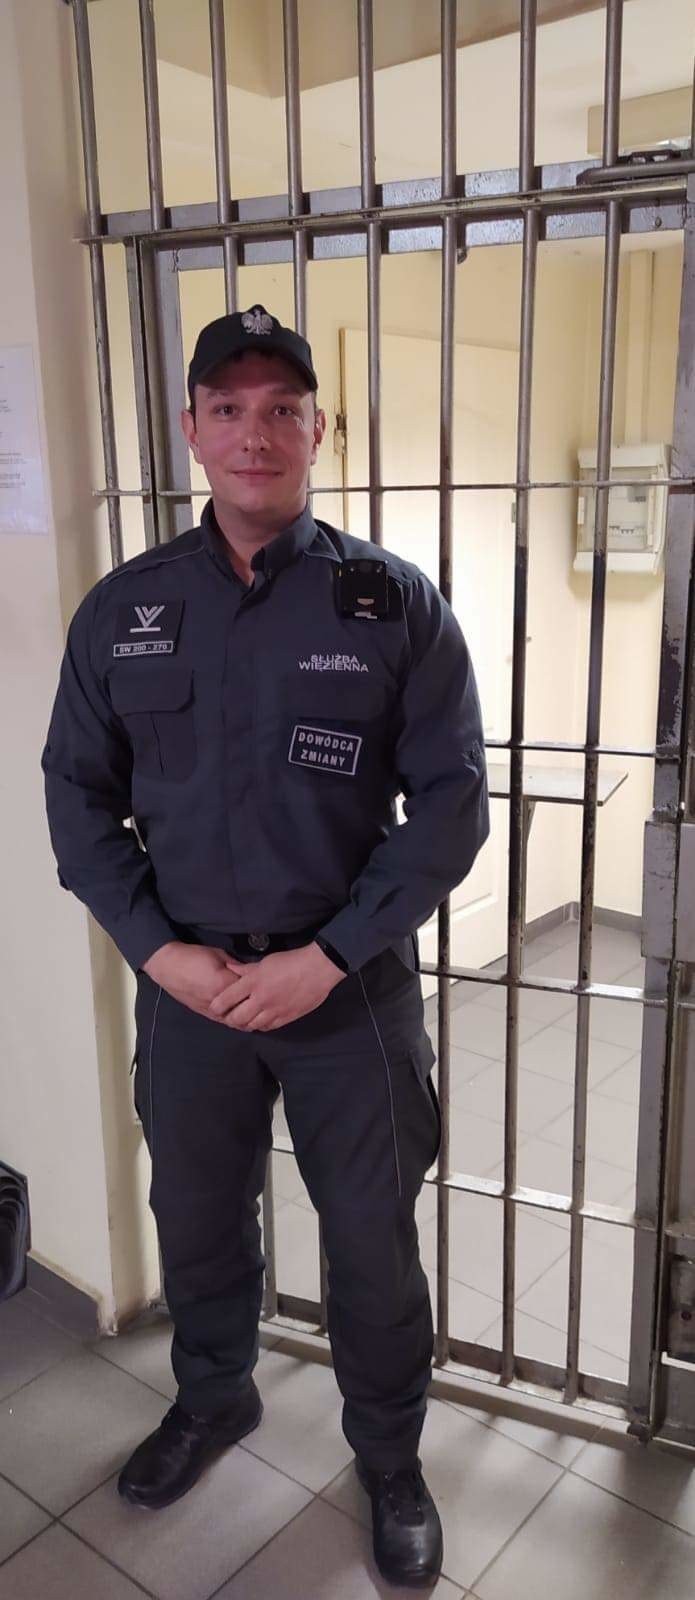 St. sierż. sztab. Piotr Rozpłochowski pracuje w Areszcie...